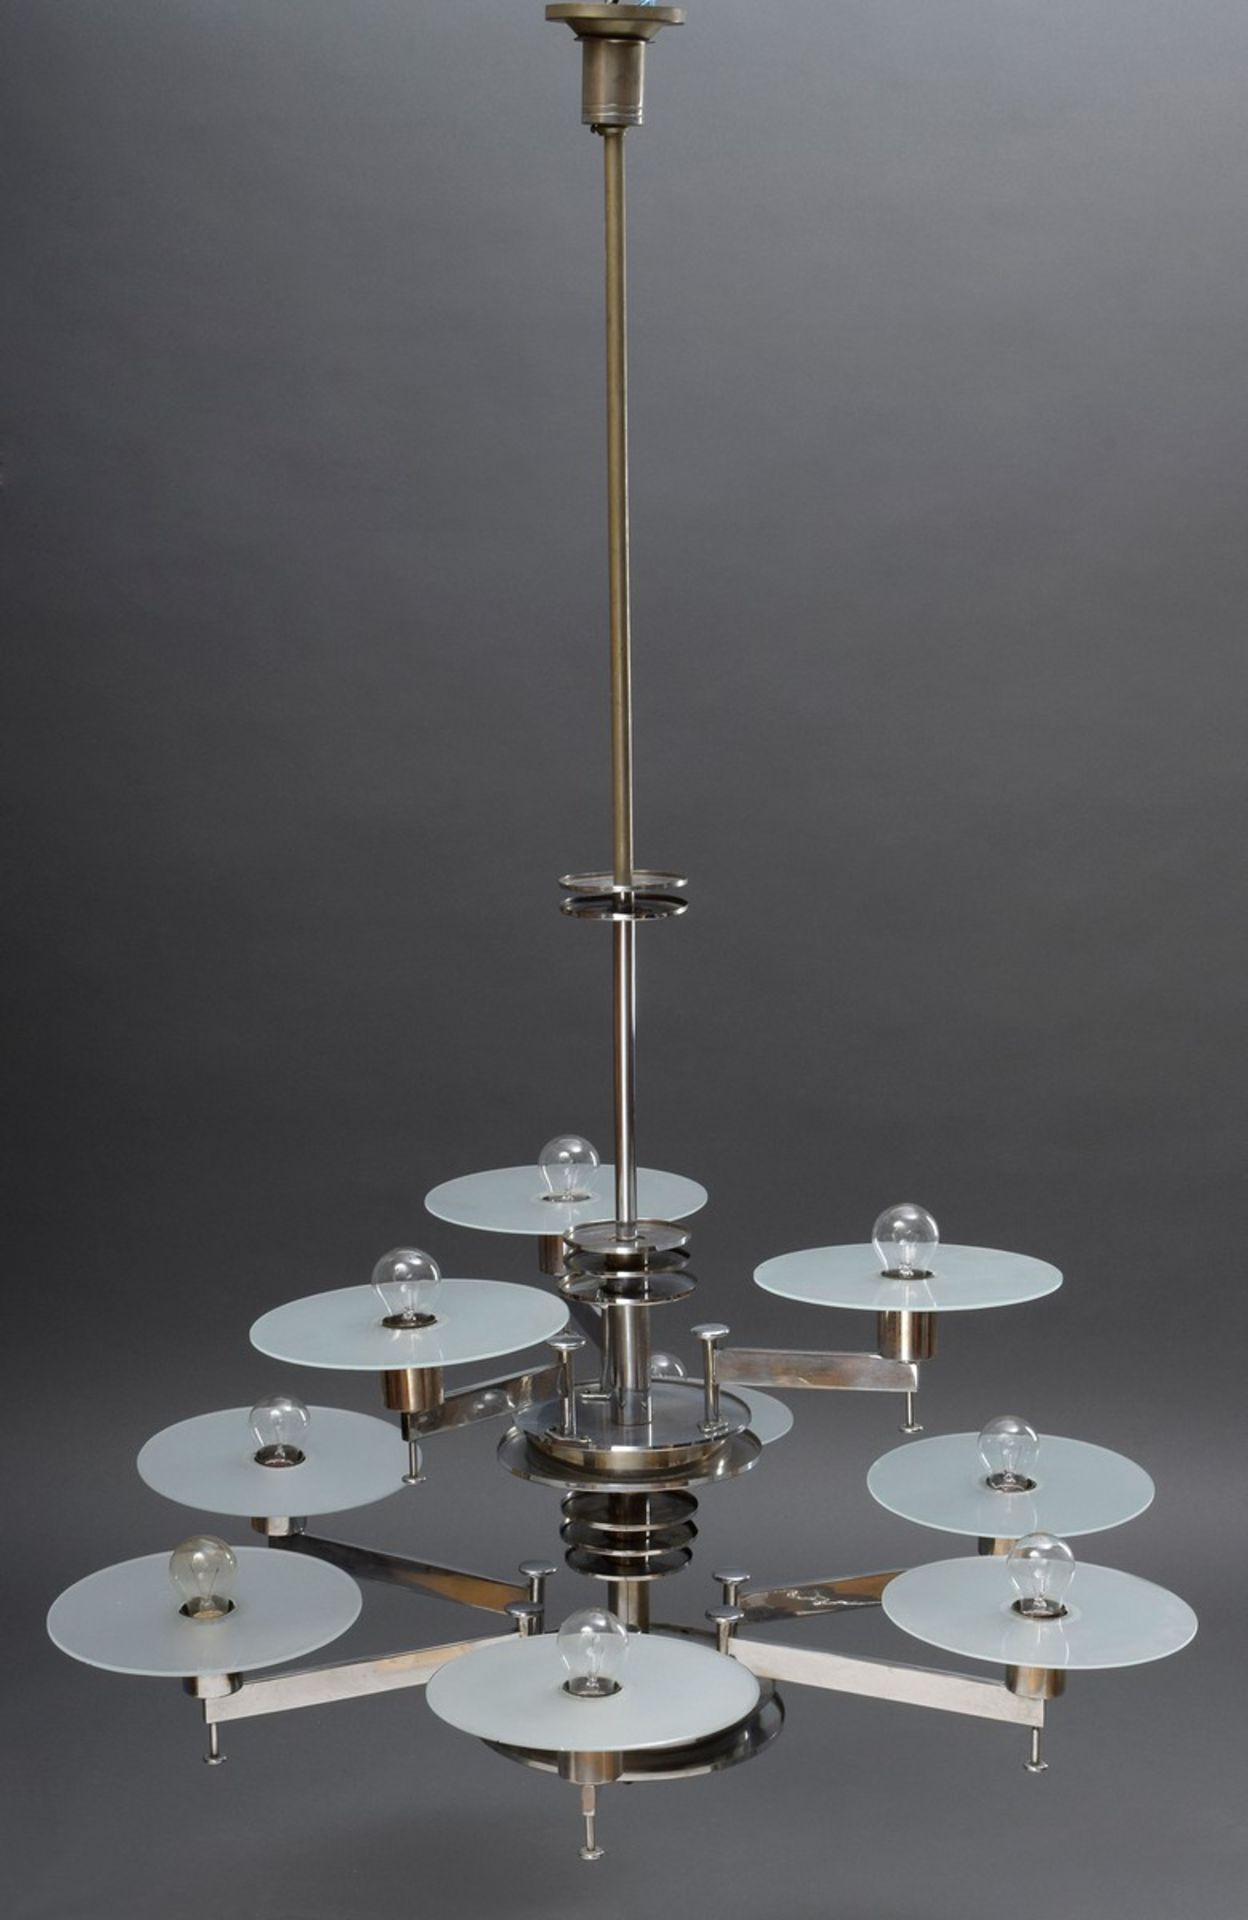 Art Deco Deckenlampe mit 9 Lichtquellen in zwei Etagen, Chrom/Milchglas, um 192 - Bild 2 aus 4